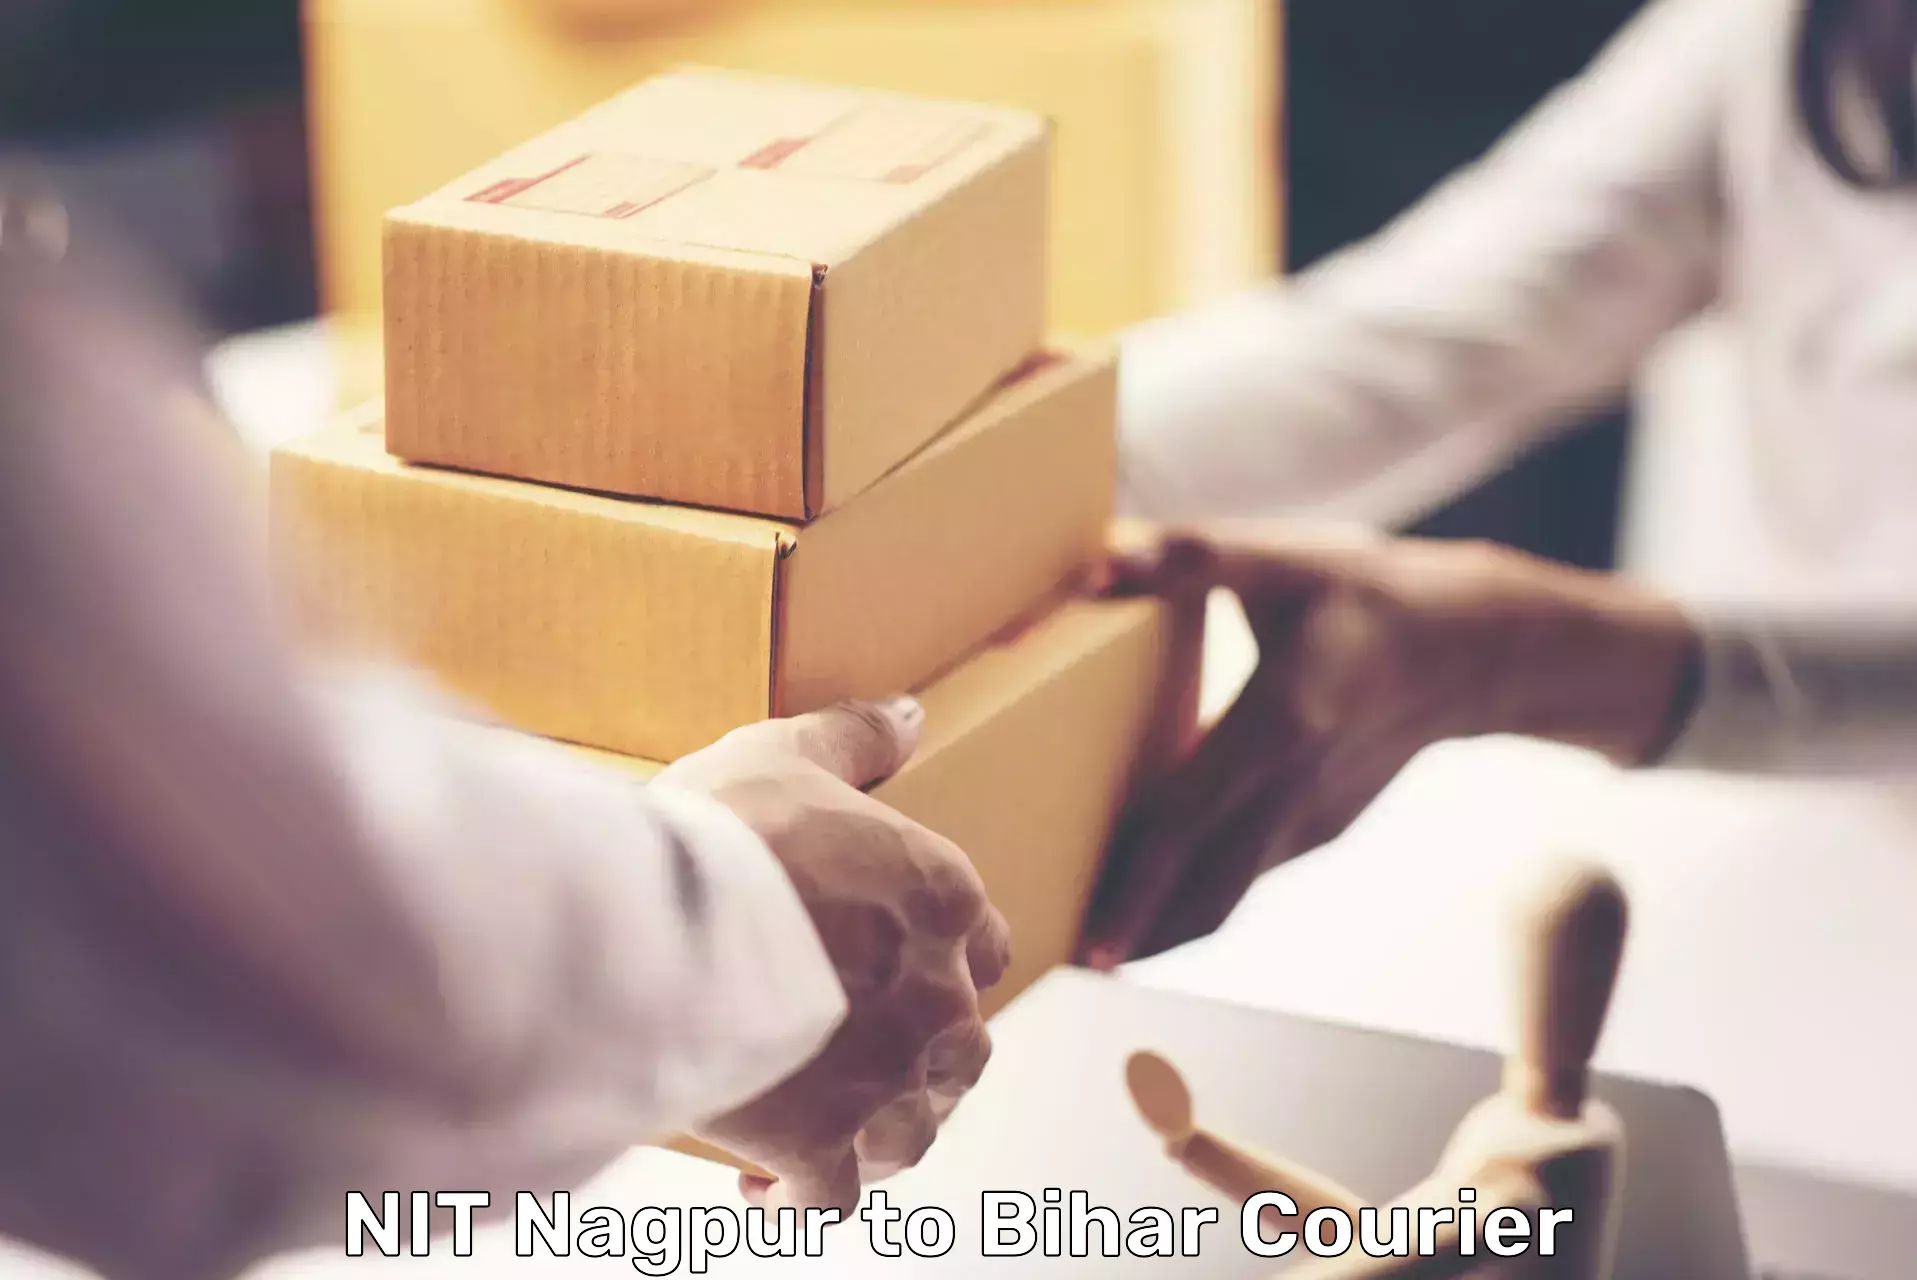 Reliable parcel services NIT Nagpur to Barhiya